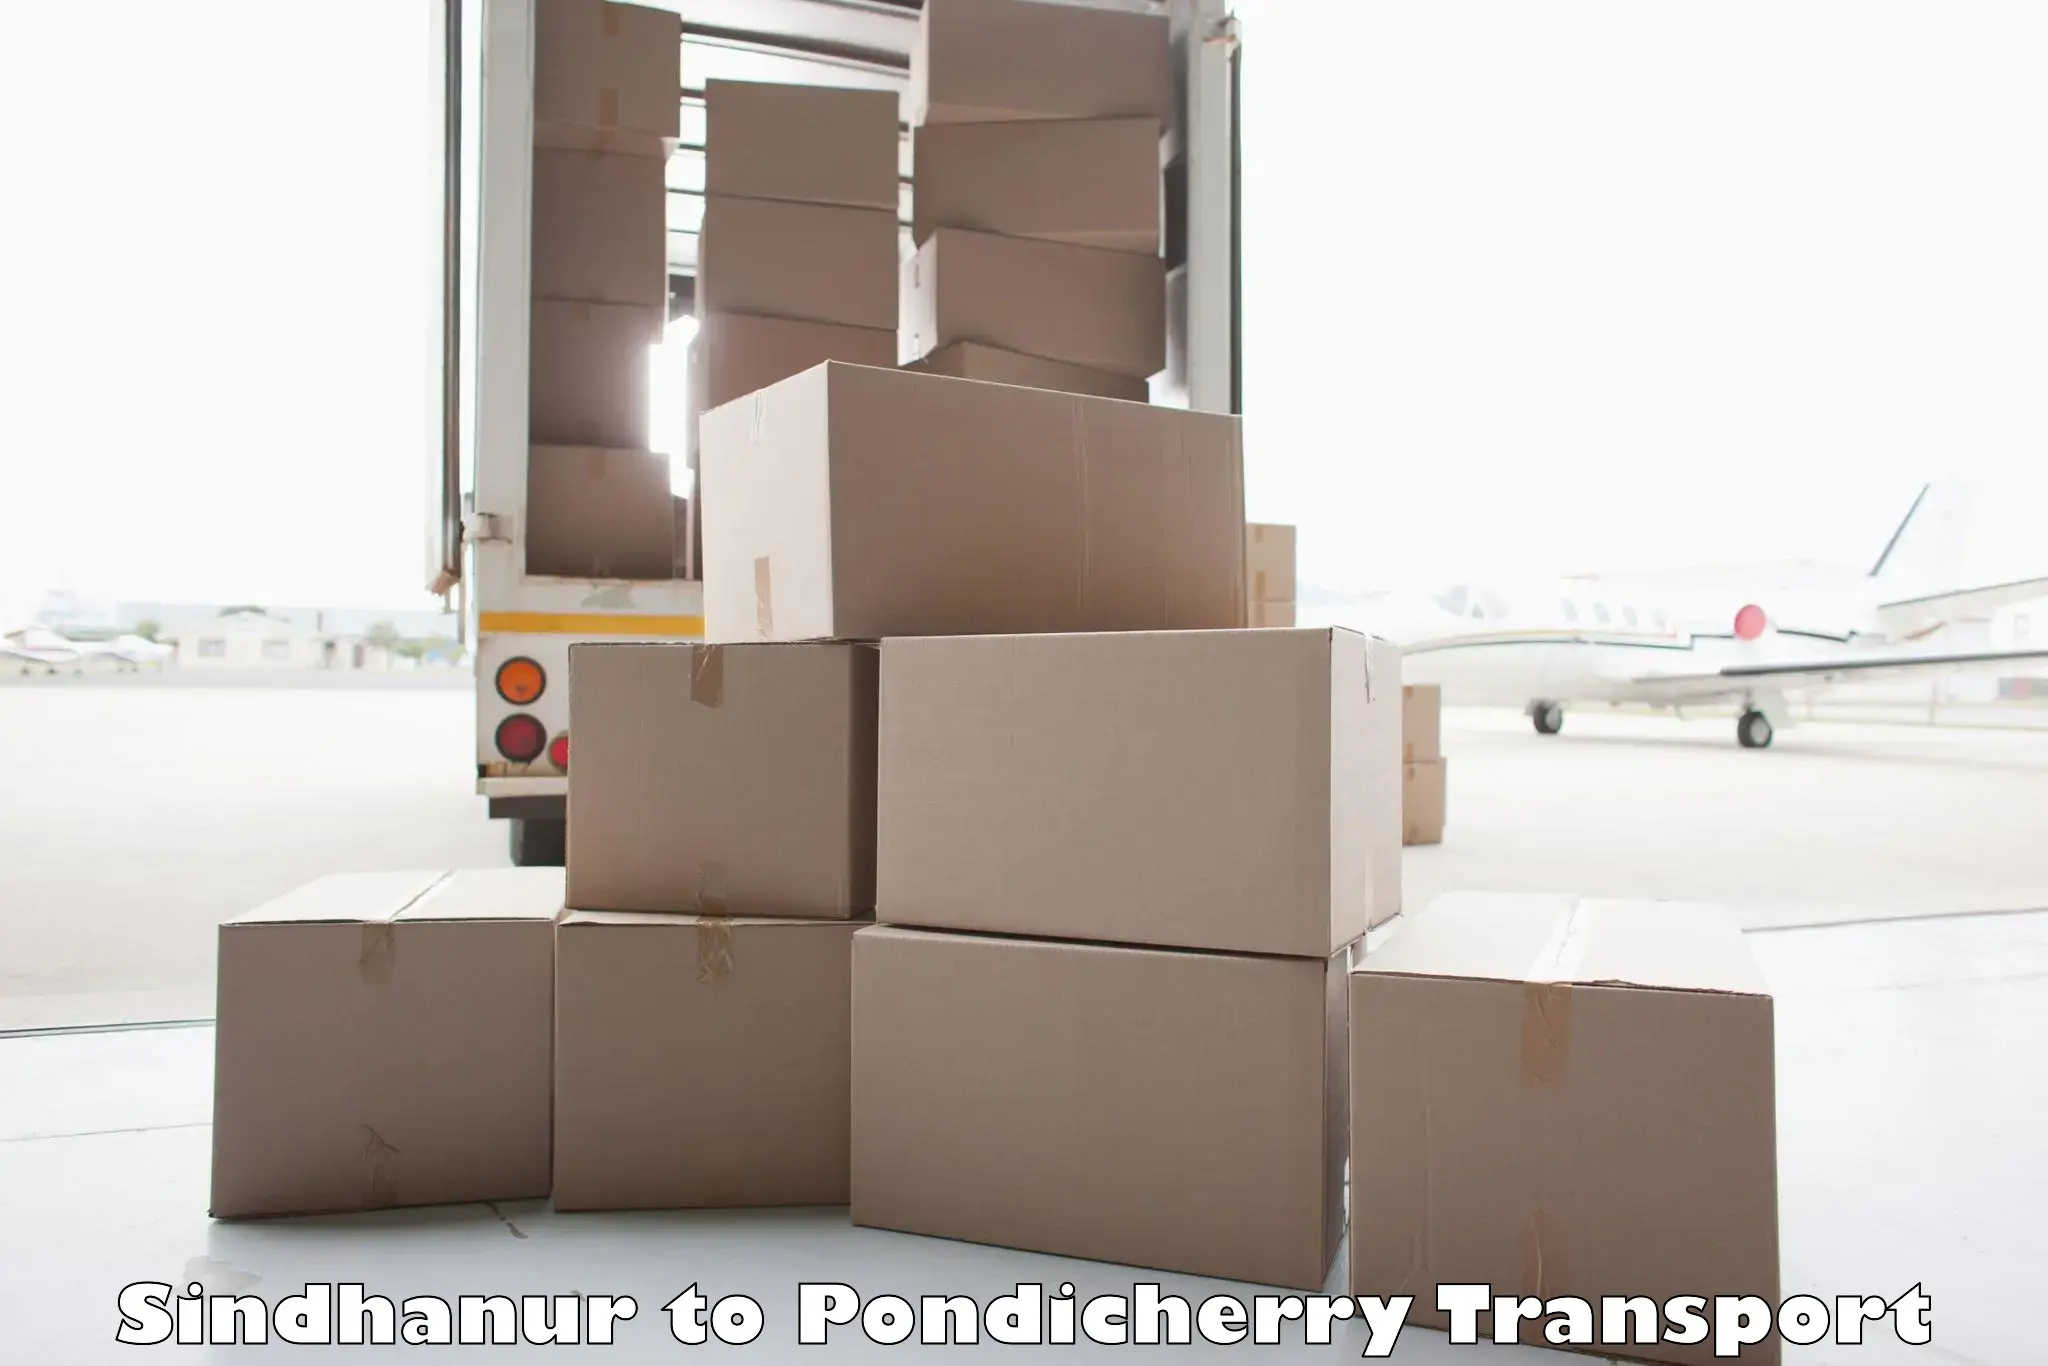 Delivery service Sindhanur to Pondicherry